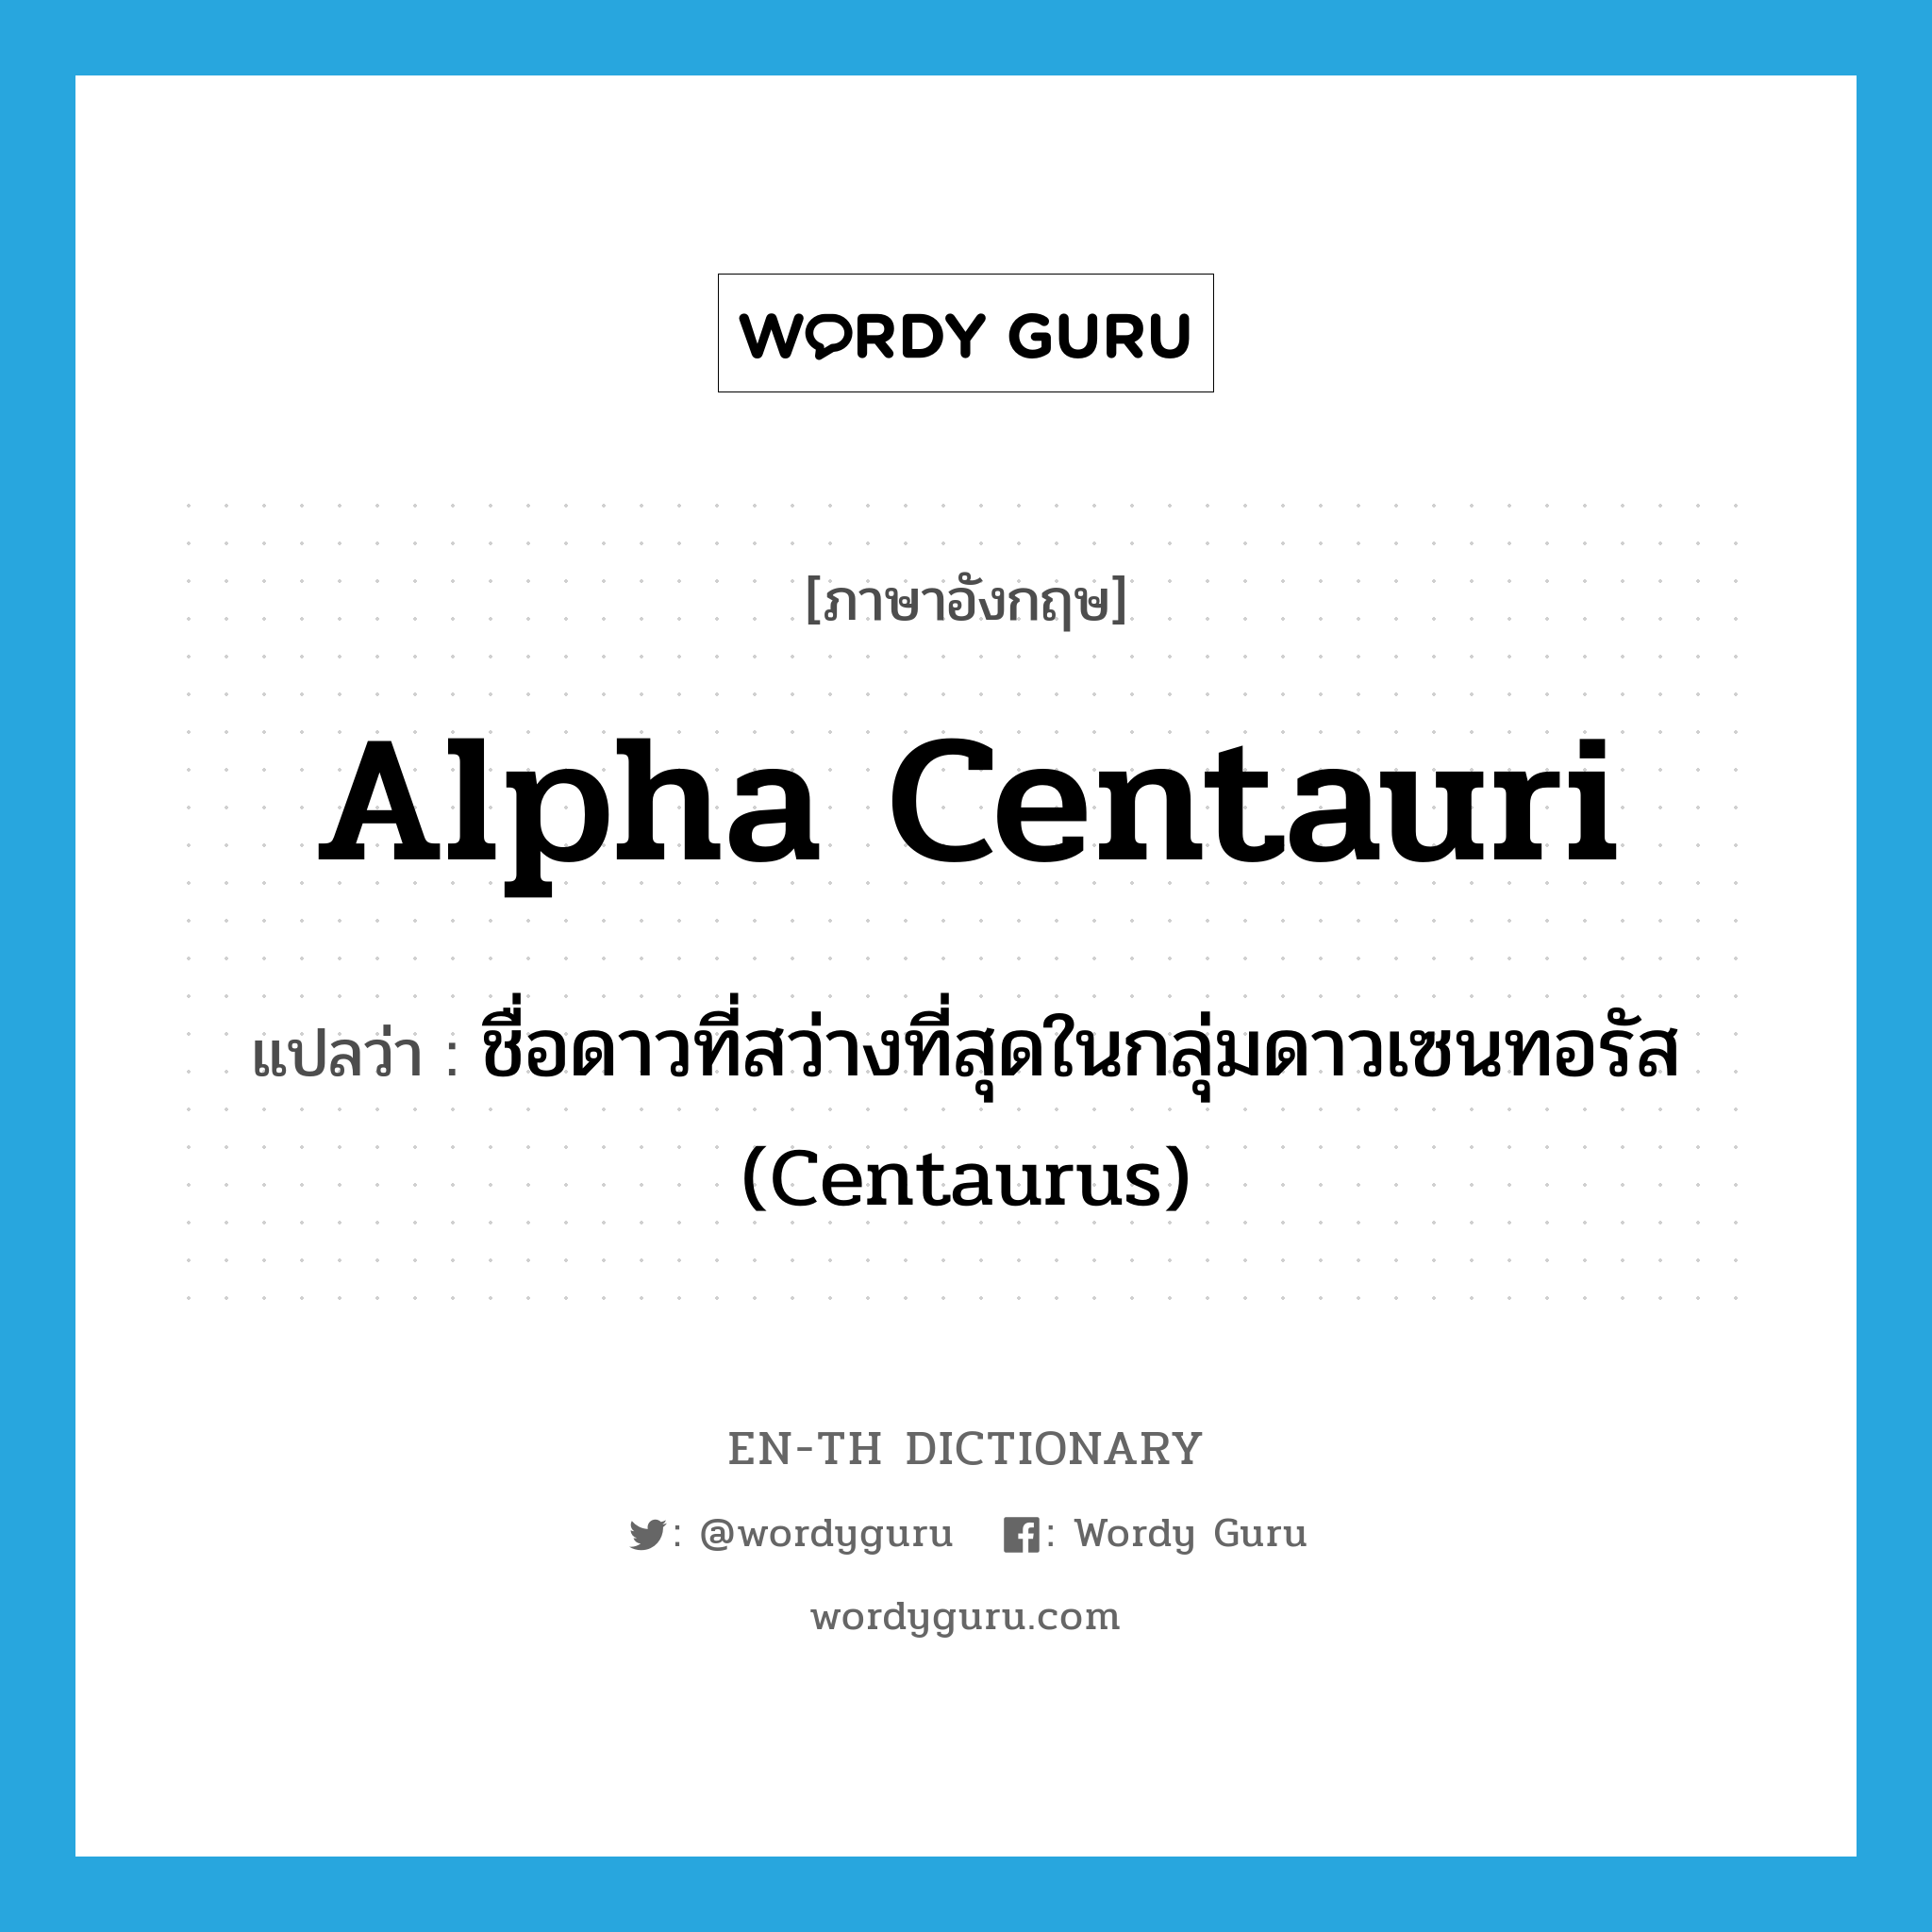 Alpha Centauri แปลว่า?, คำศัพท์ภาษาอังกฤษ Alpha Centauri แปลว่า ชื่อดาวที่สว่างที่สุดในกลุ่มดาวเซนทอรัส (Centaurus) ประเภท N หมวด N